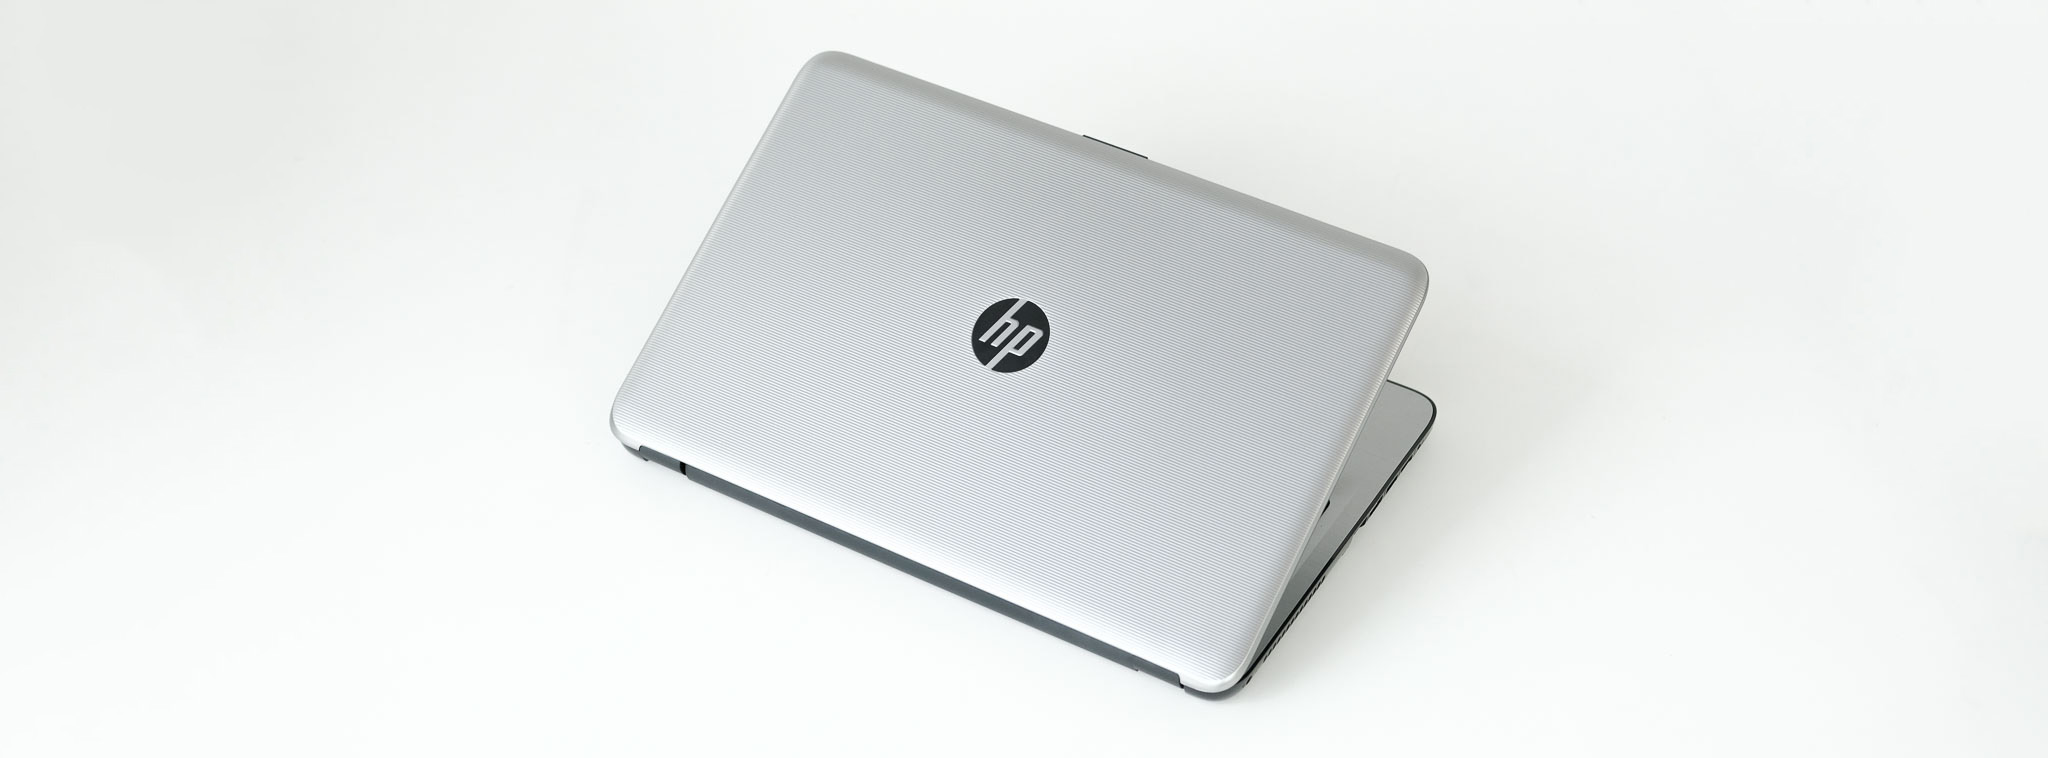 Trên tay HP 15-ay073TU: Laptop giá mềm dành cho sinh viên/học sinh với nhu cầu học tập nhẹ nhàng